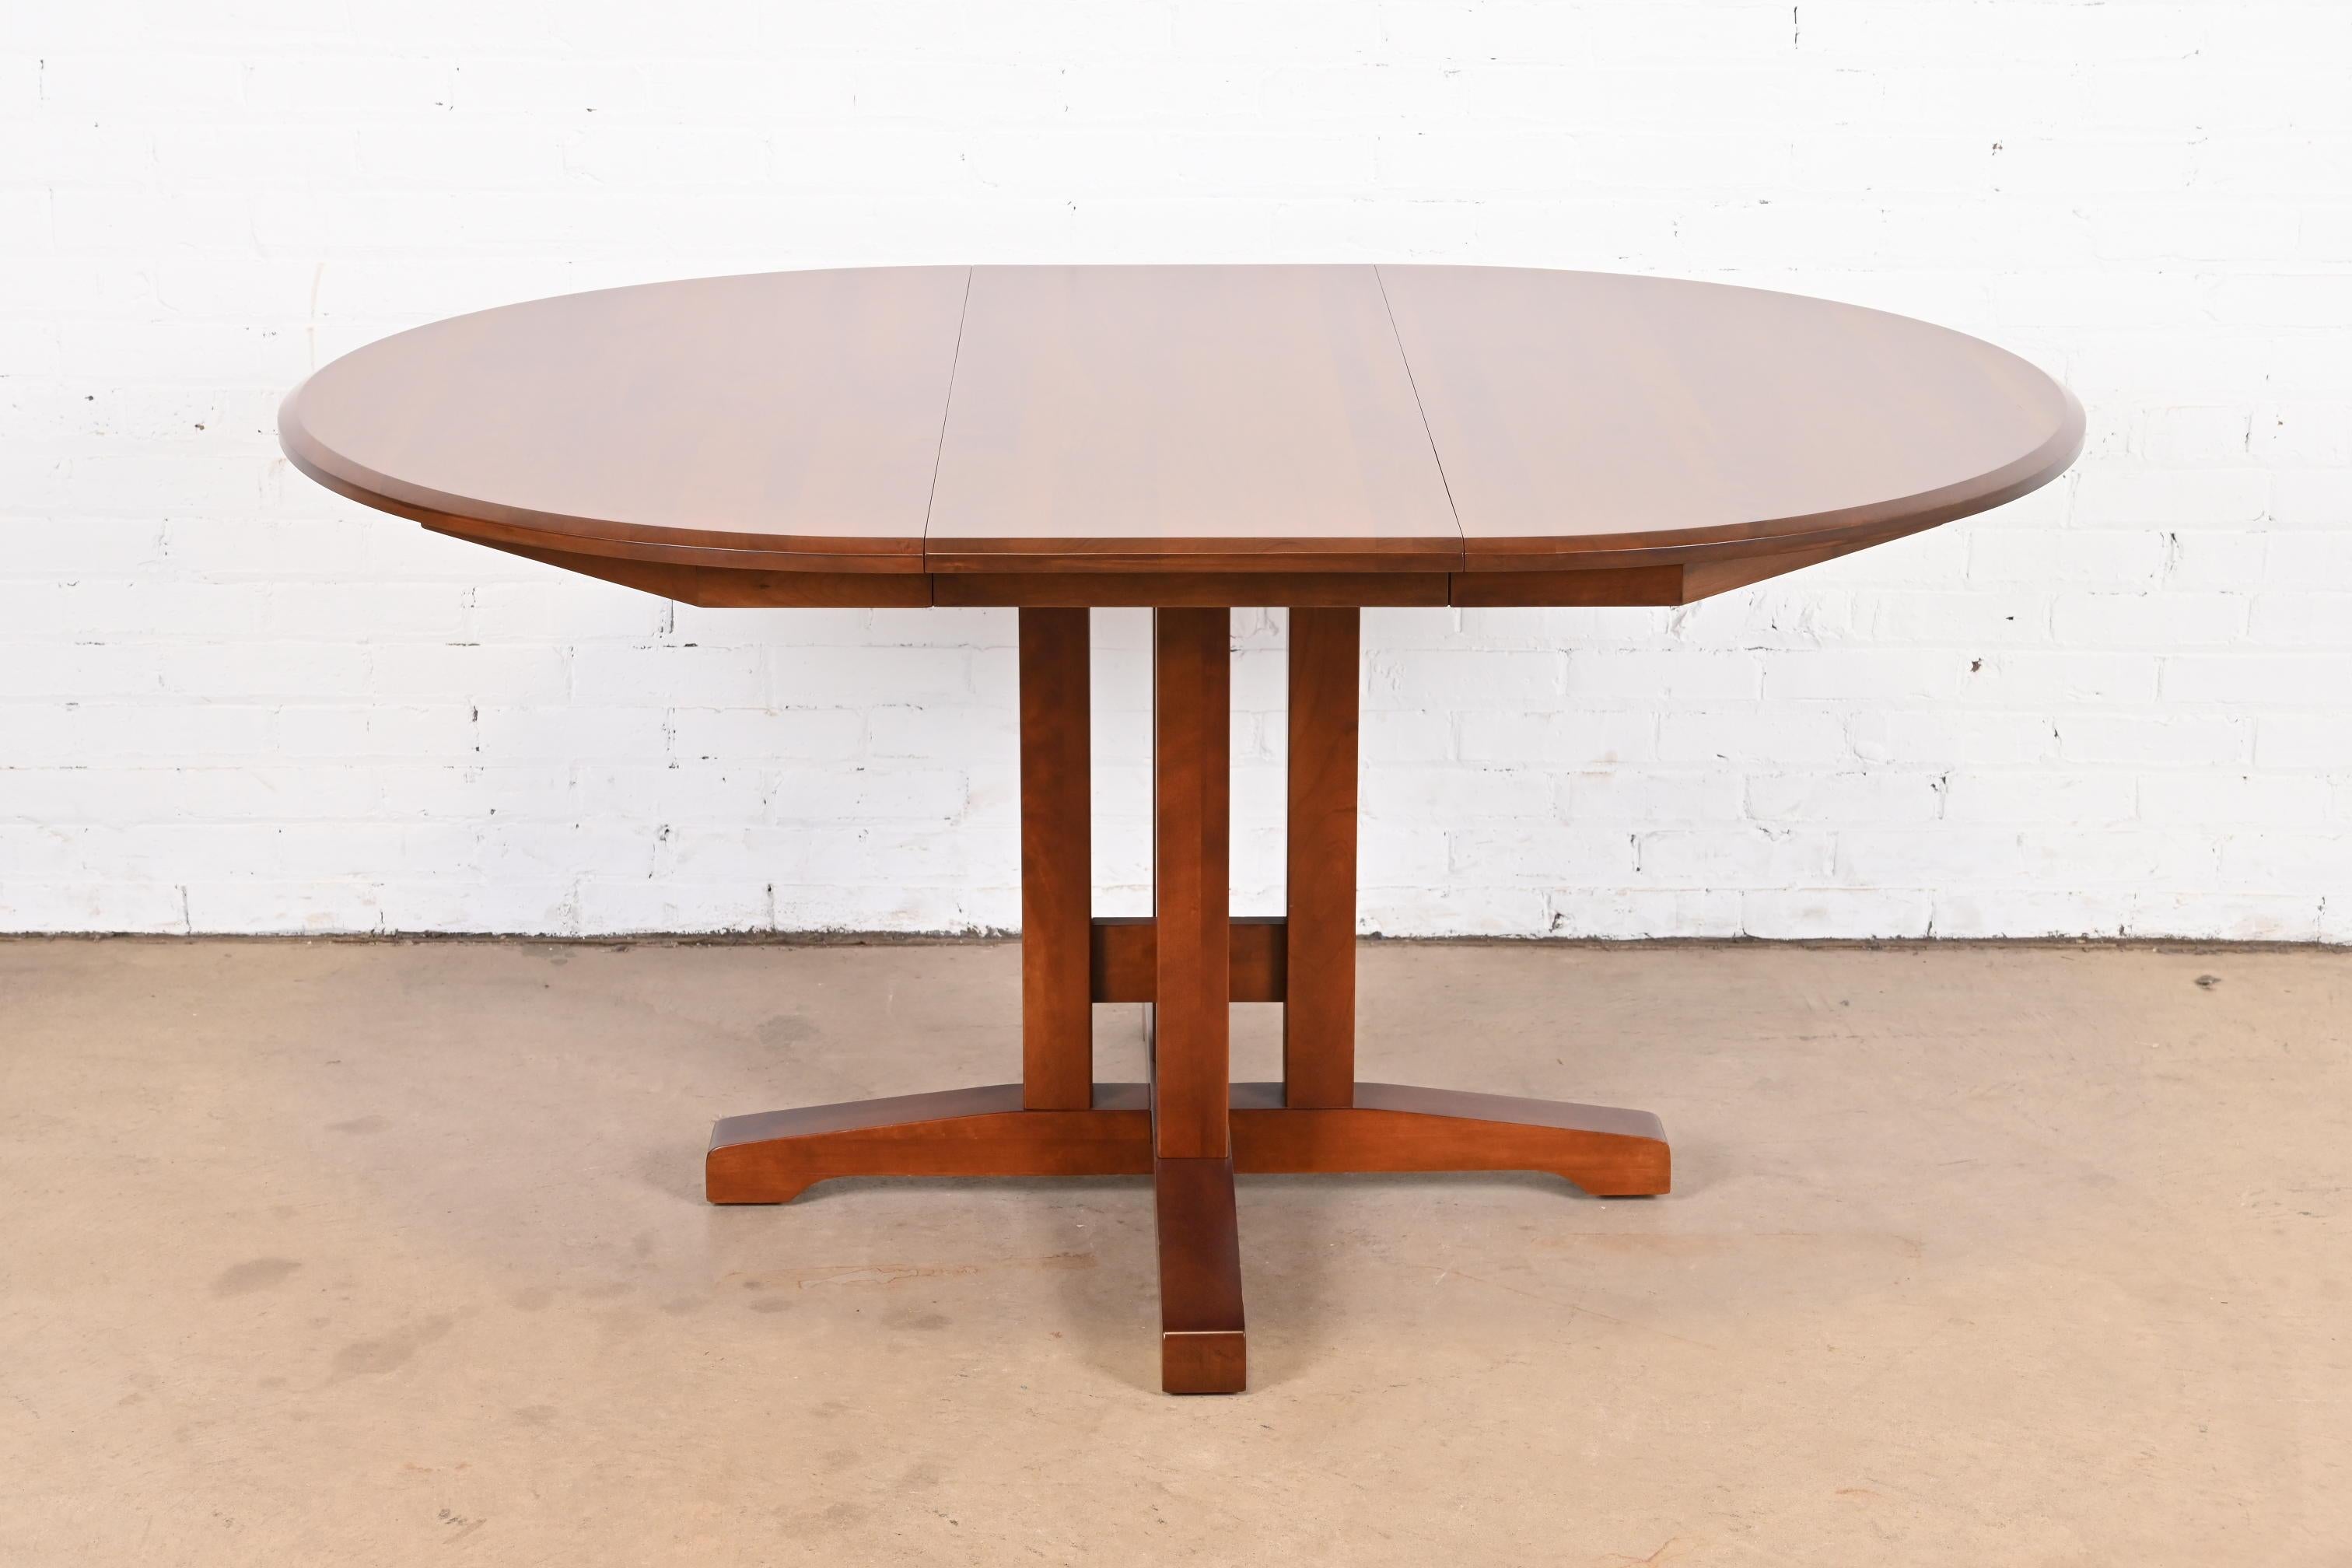 Una magnífica mesa de comedor extensible con pedestal de madera maciza de cerezo de estilo Mission, Arts & Crafts o Shaker

A la manera de Thomas Moser

EE.UU., alrededor de 1990

Medidas: 46